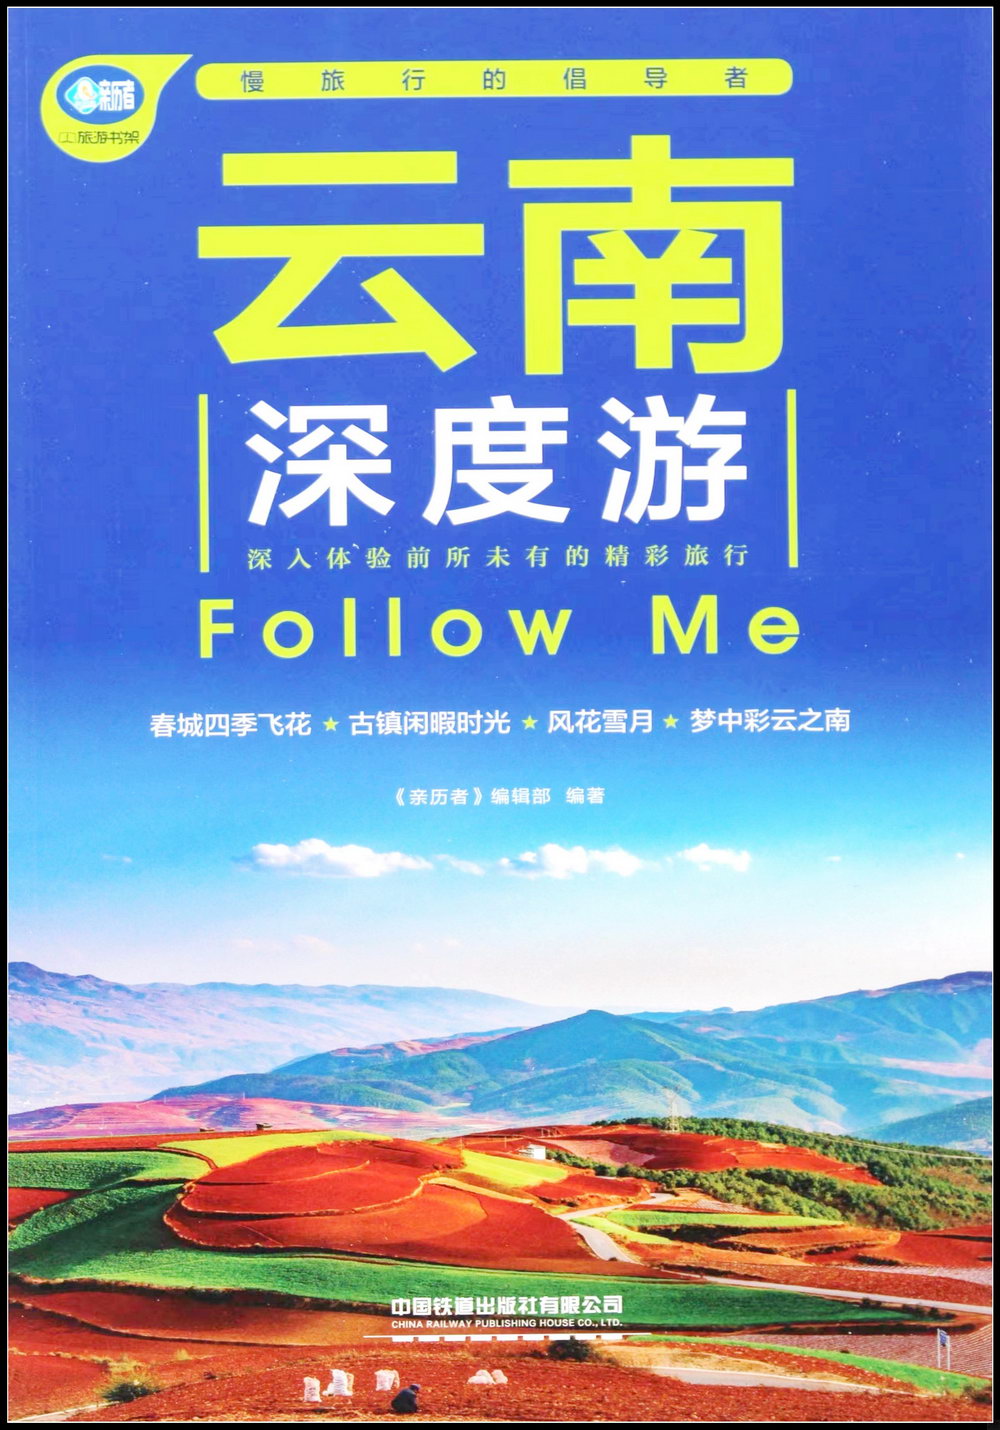 雲南深度游Follow Me